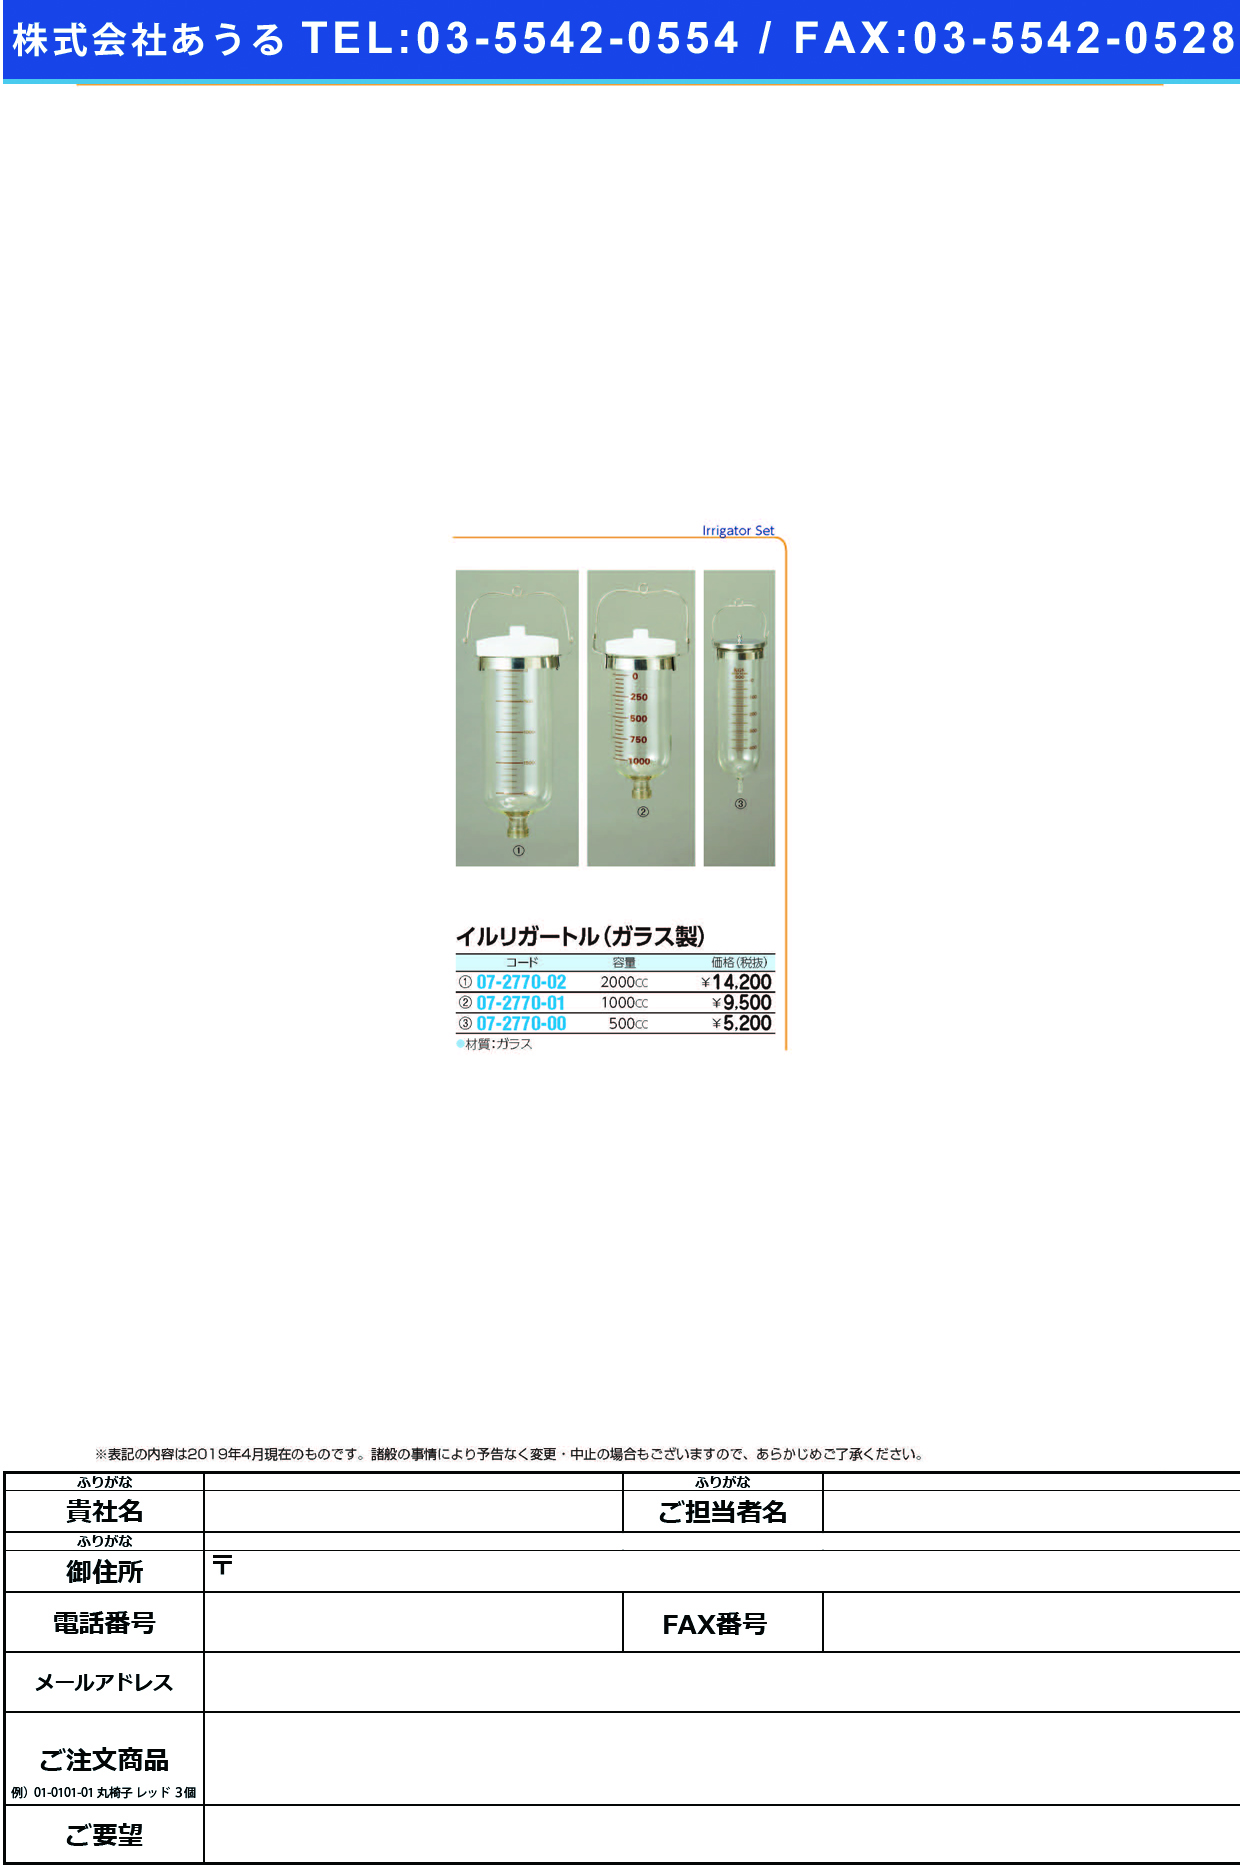 (07-2770-01)イルリガートル（ガラス製） 1000CC ｲﾙﾘｶﾞｰﾄﾙ【1本単位】【2019年カタログ商品】